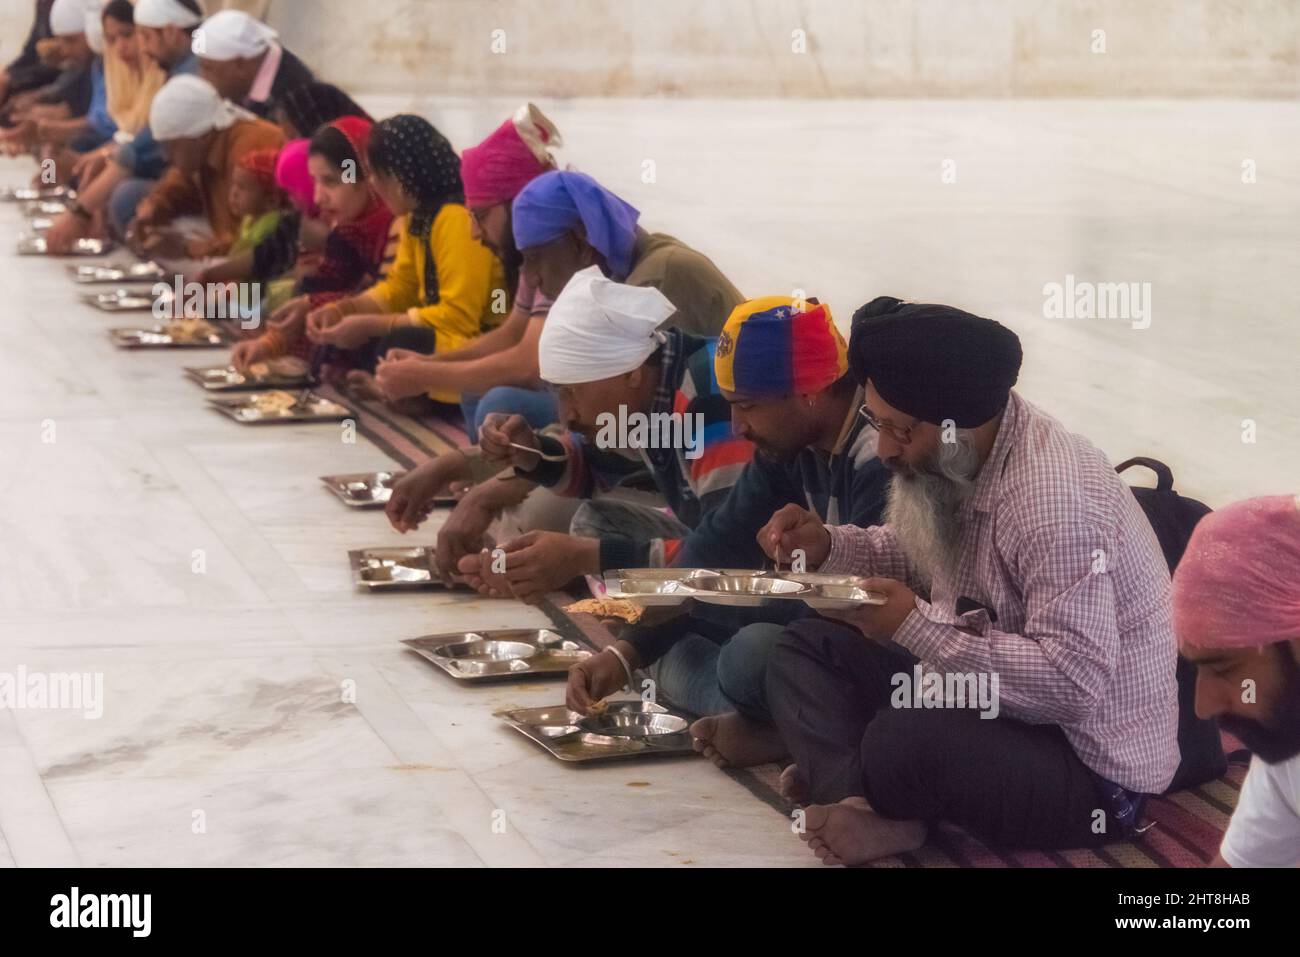 Pilgrims eating inside Gurudwara Bangla Sahib, Sikh house of worship, New Delhi, India (Gurudwara Bangla Sahib, the largest Sikh temple in Delhi, serv Stock Photo